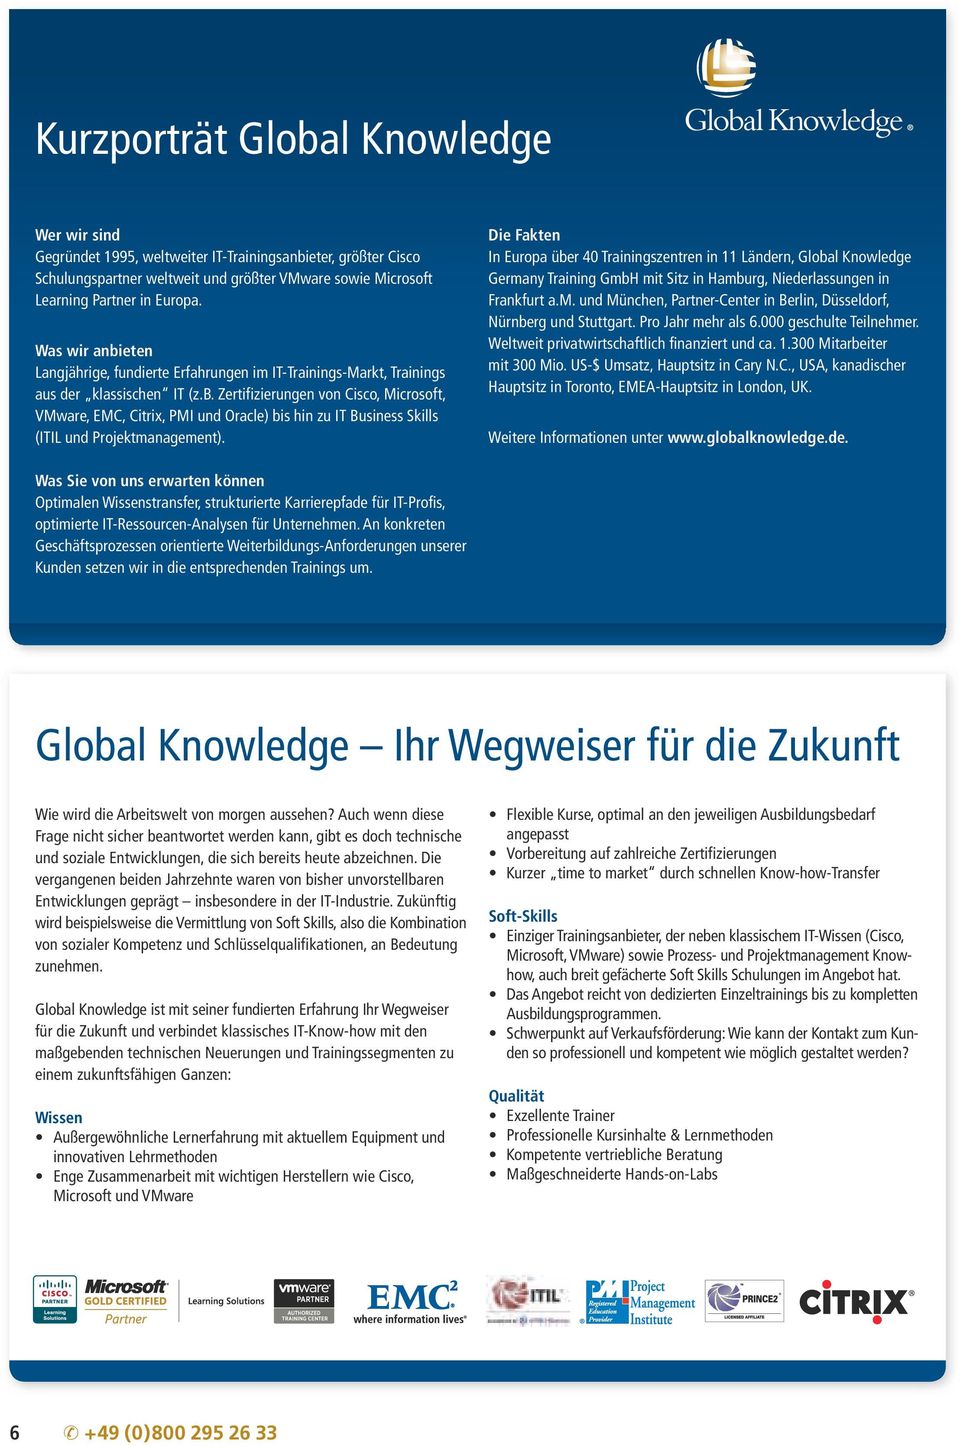 Die Fakten In Europa über 40 Trainingszentren in 11 Ländern, Global Knowledge Germany Training GmbH mit Sitz in Hamburg, Niederlassungen in Frankfurt a.m. und München, Partner-Center in Berlin, Düsseldorf, Nürnberg und Stuttgart.